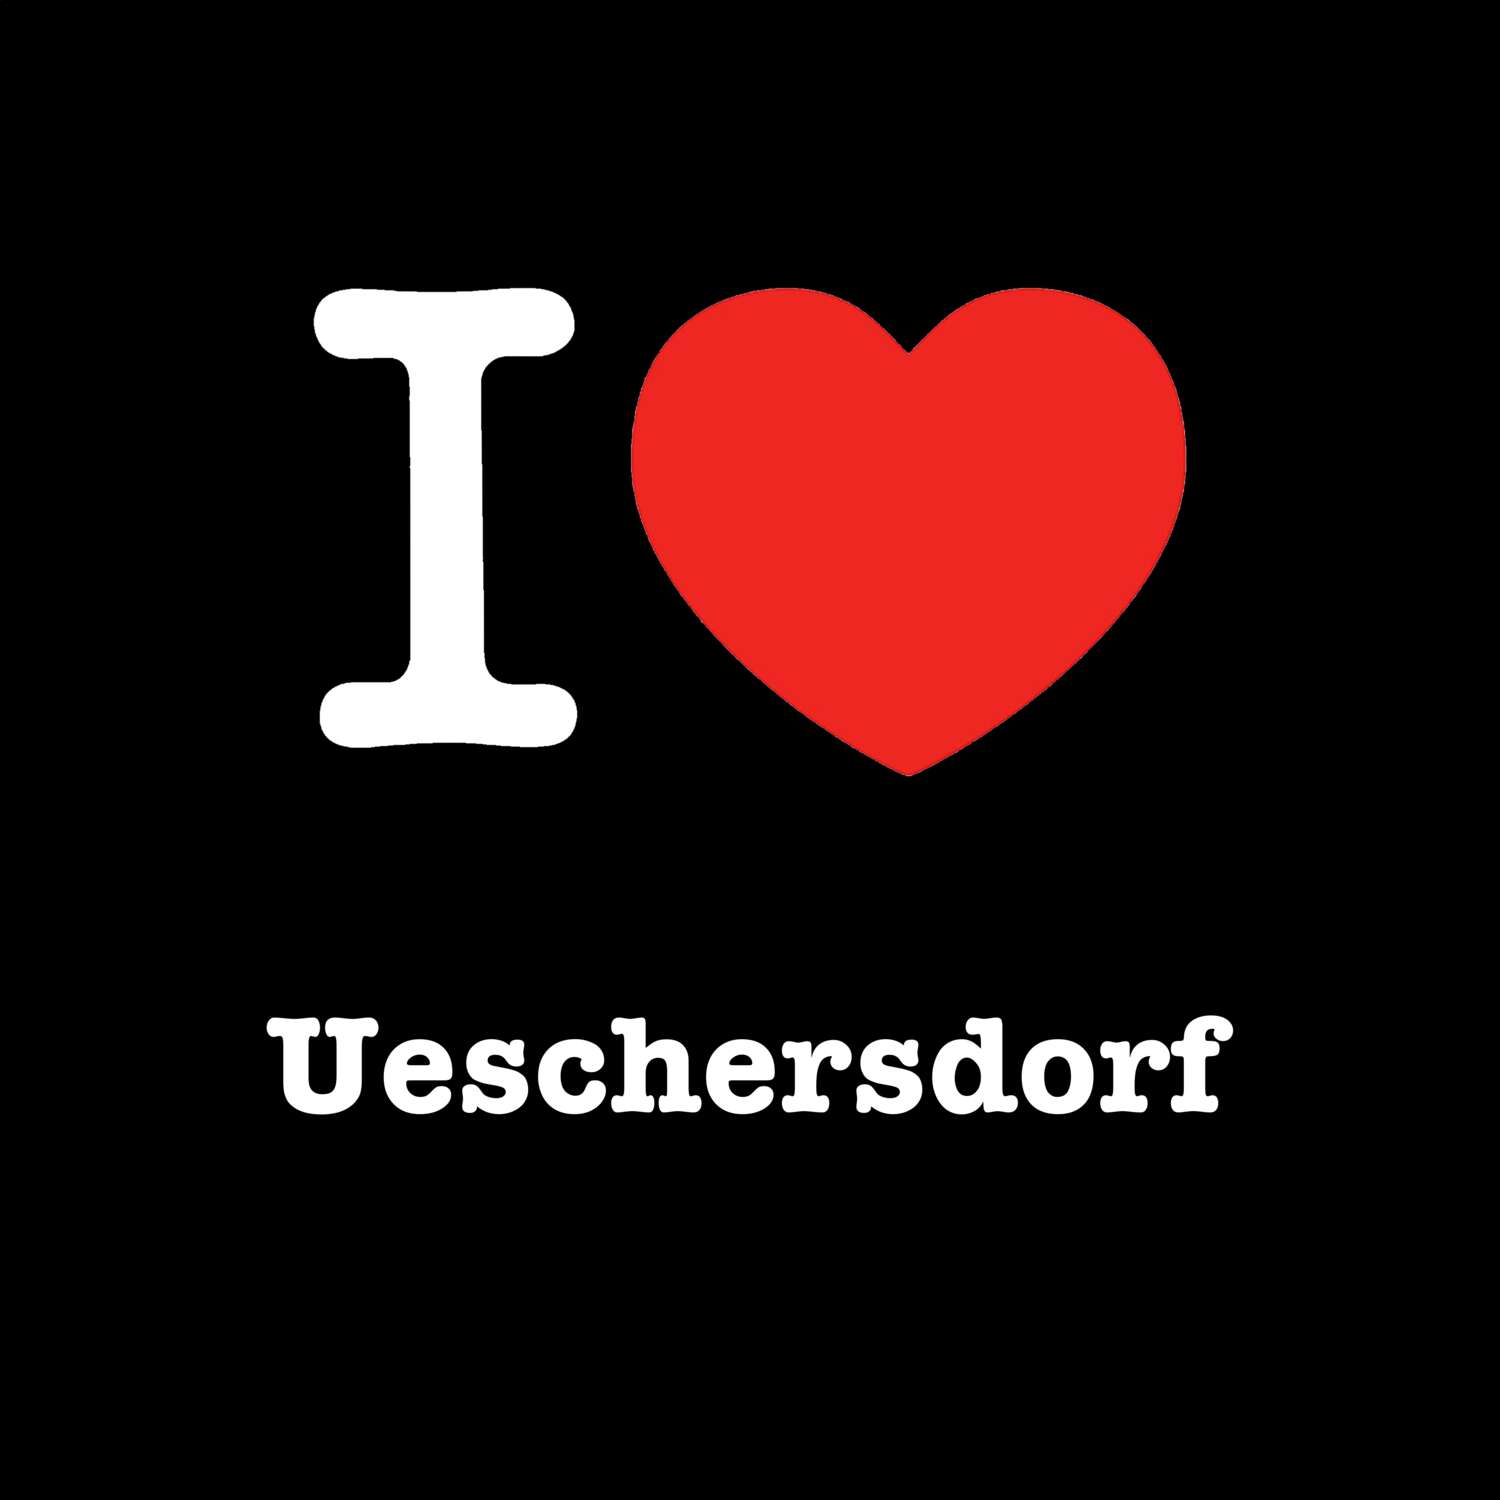 Ueschersdorf T-Shirt »I love«